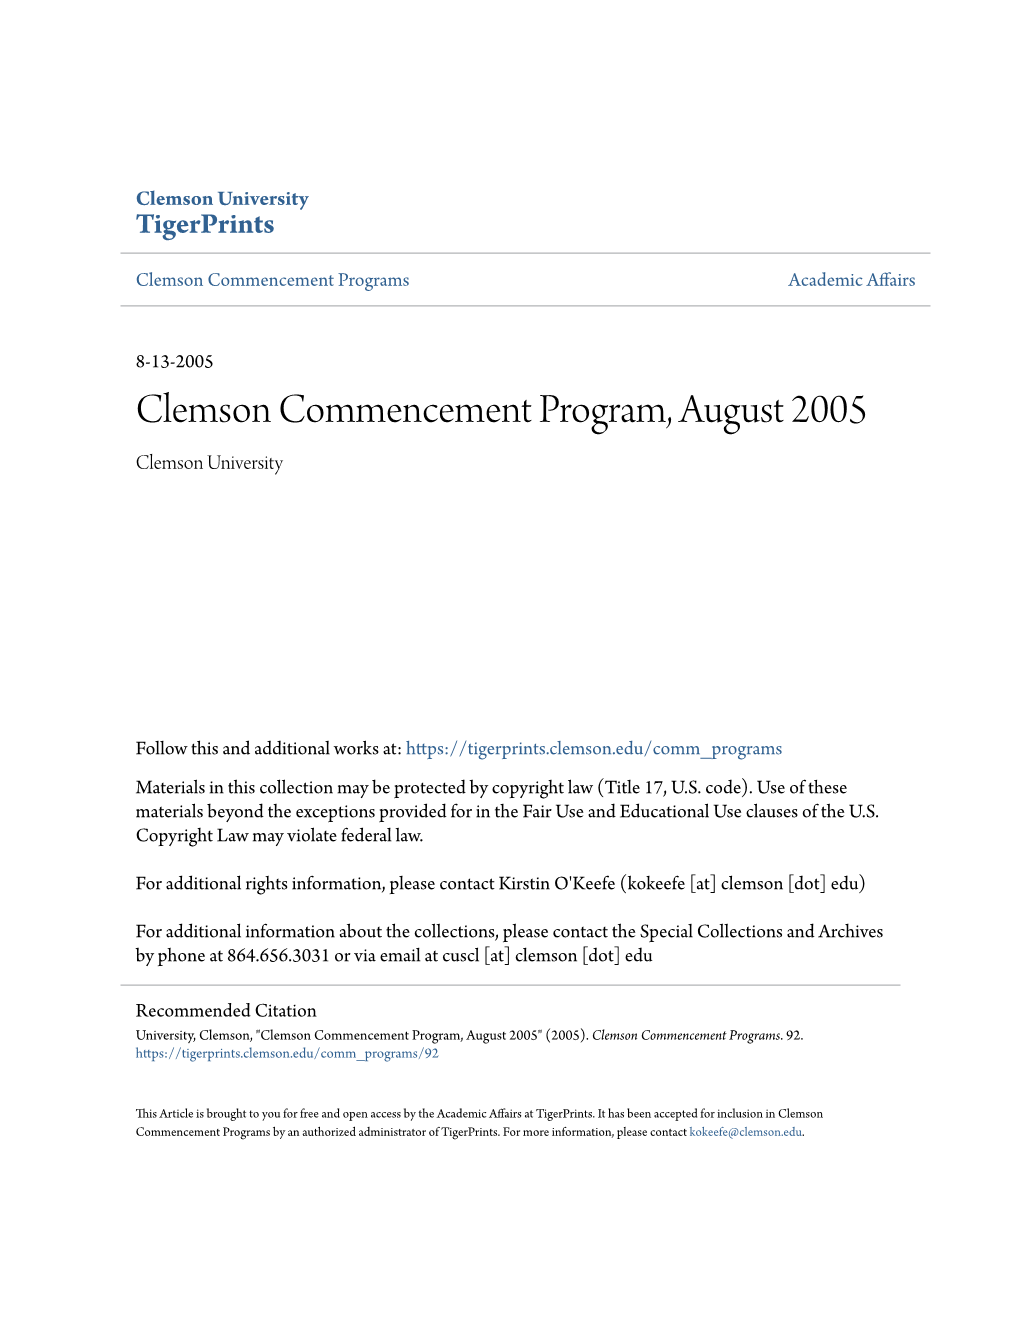 Clemson Commencement Program, August 2005 Clemson University